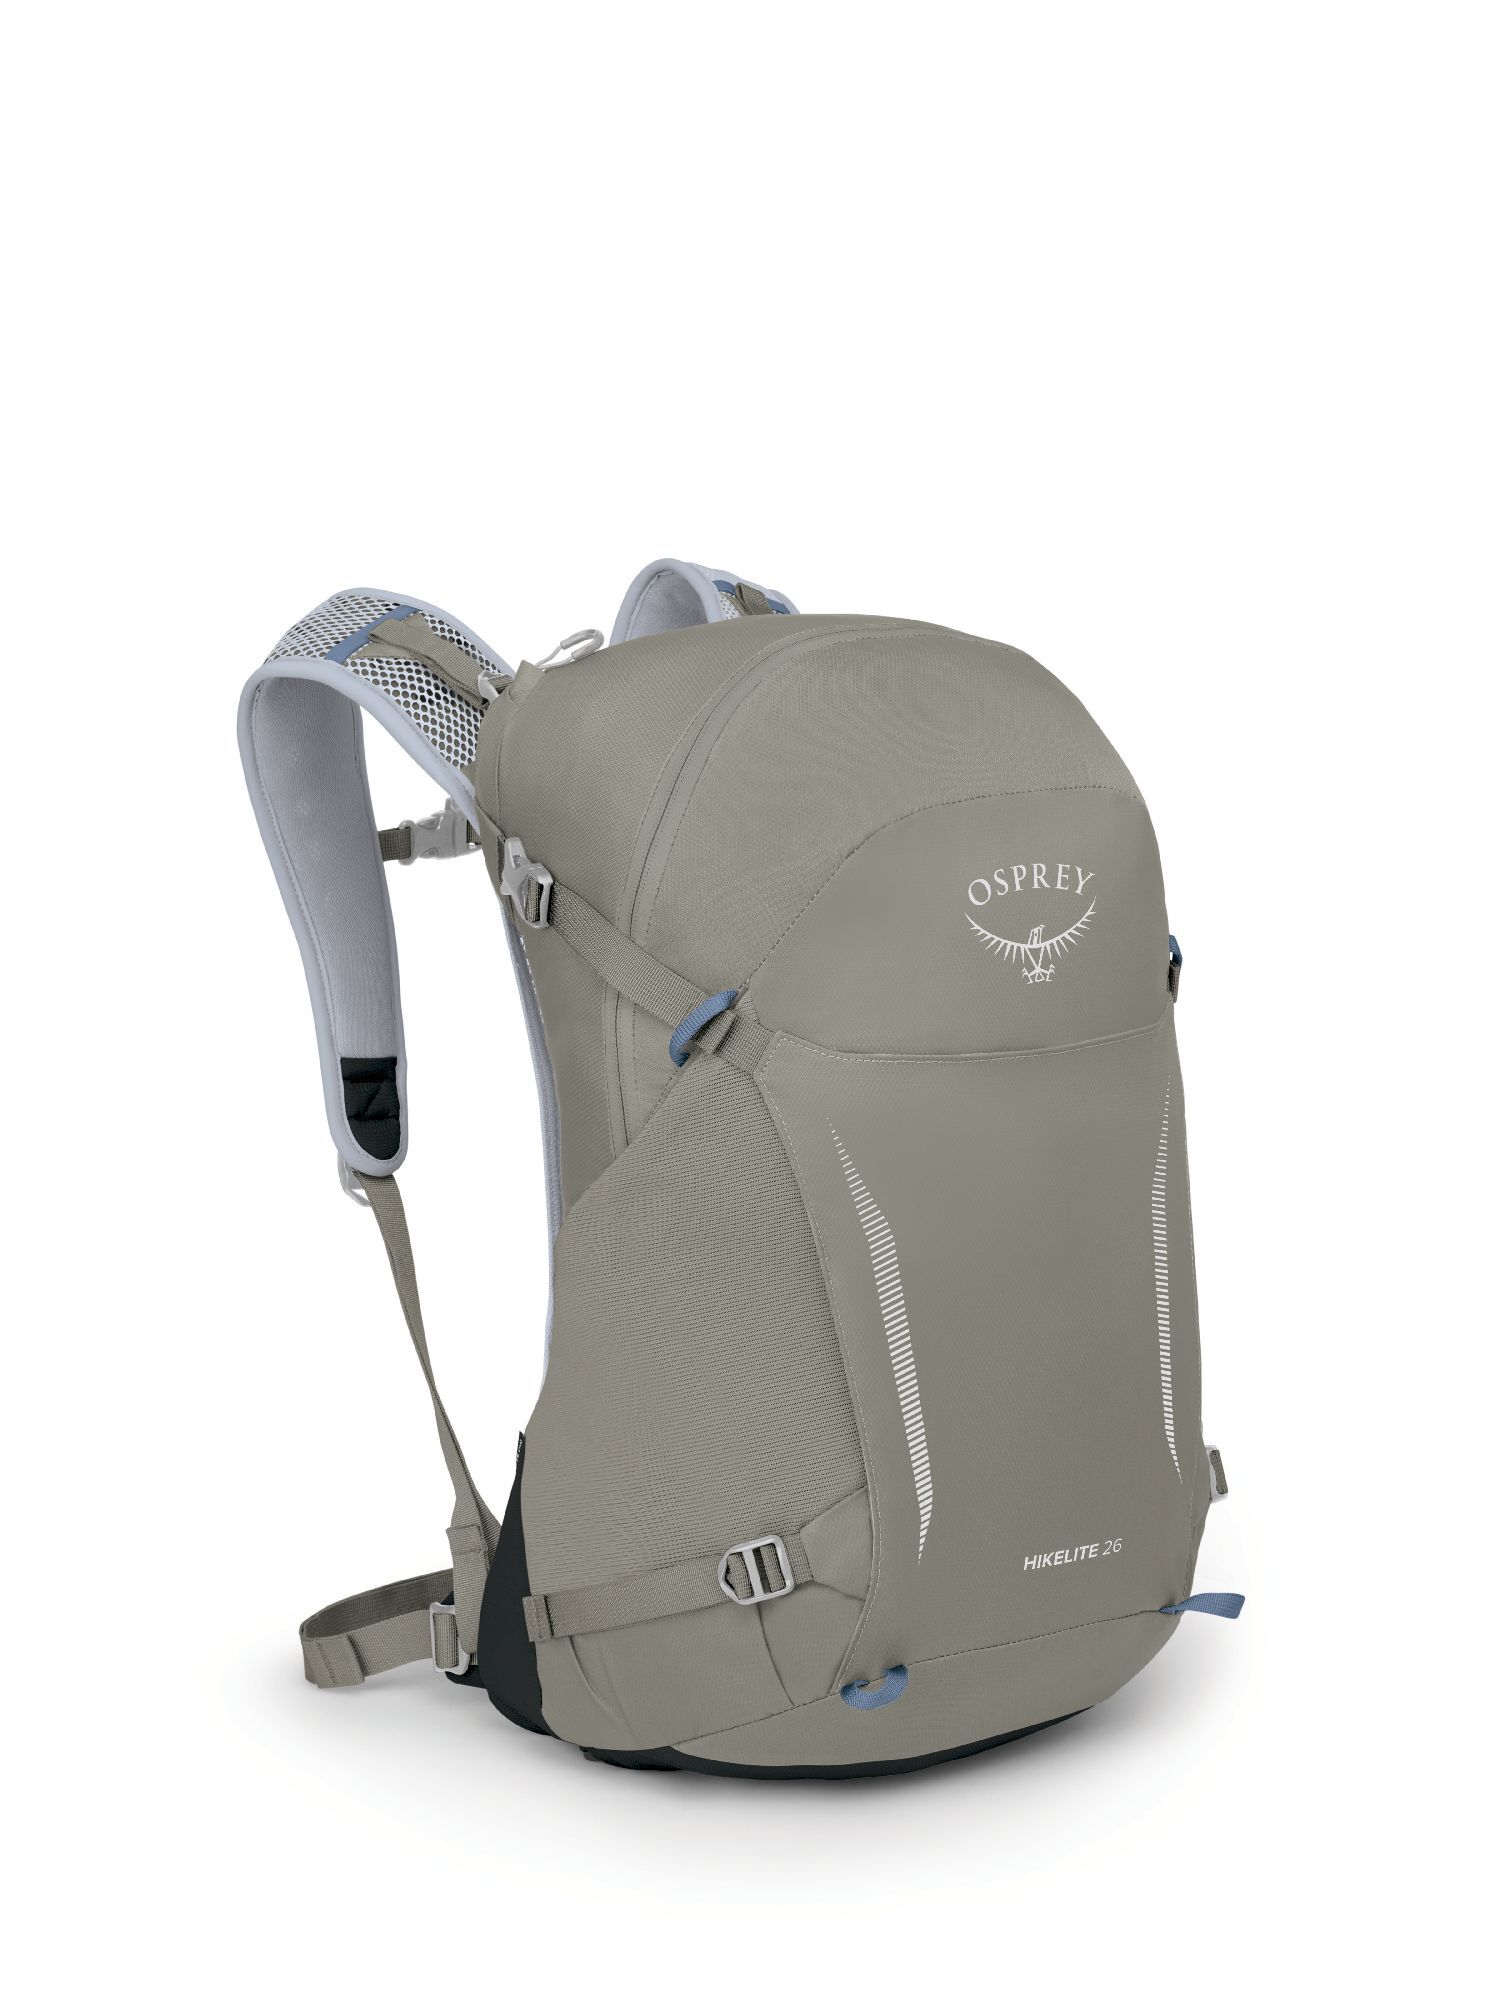 Osprey - Hikelite 26 - Hiking backpack